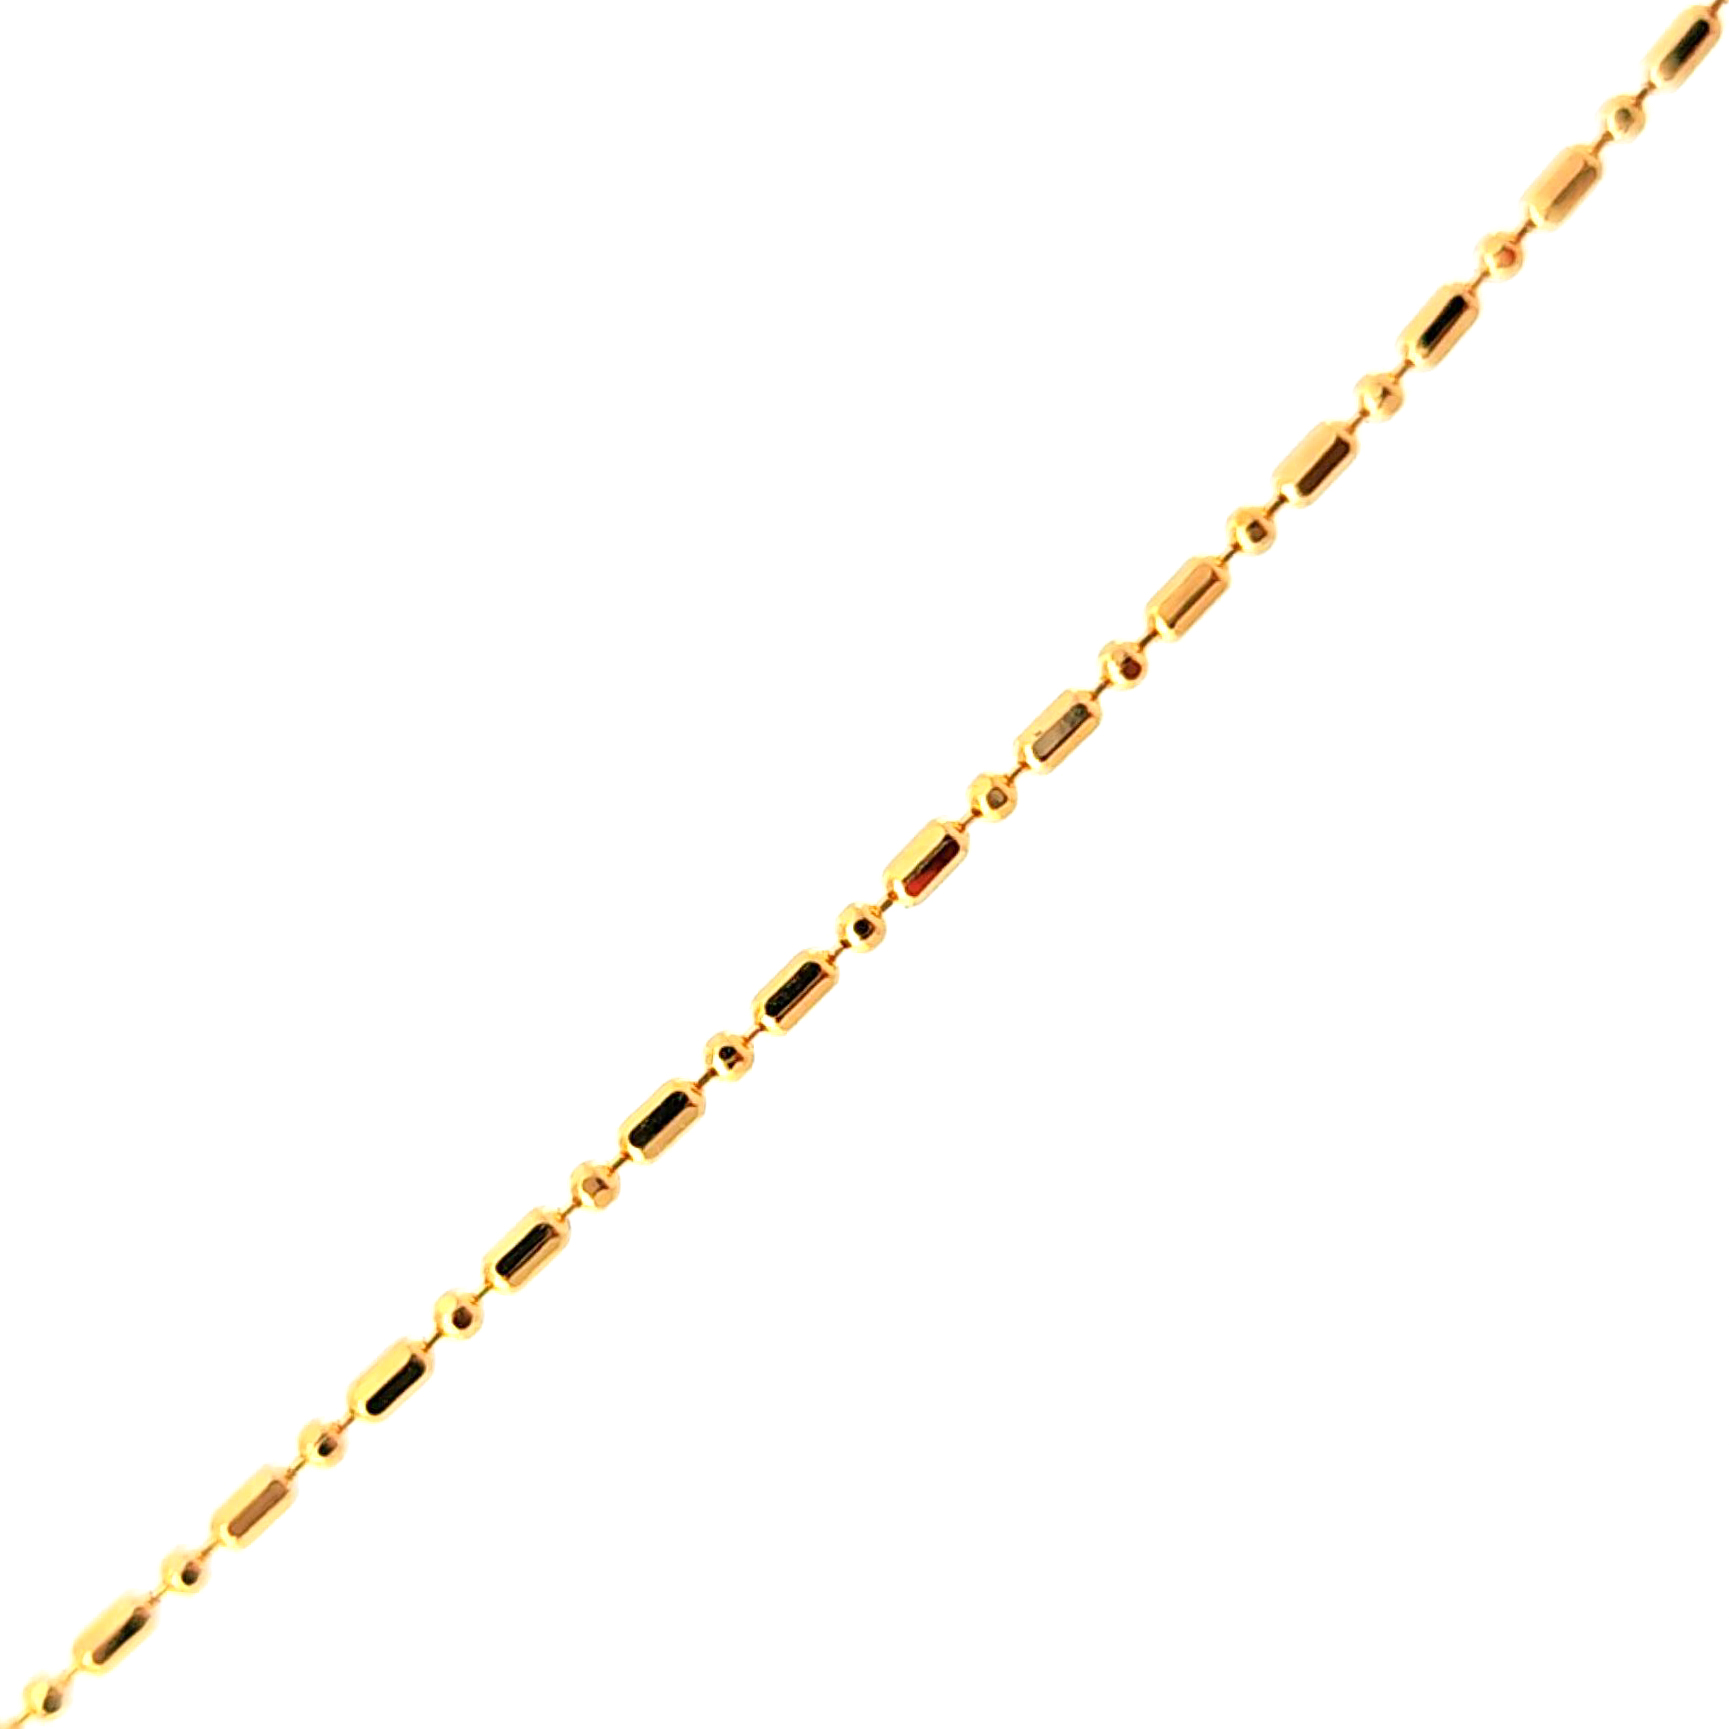 Cadena de oro amarillo 18 kde pelotas con separadores 1mm medida 40 cm, peso 2,57 gr 2